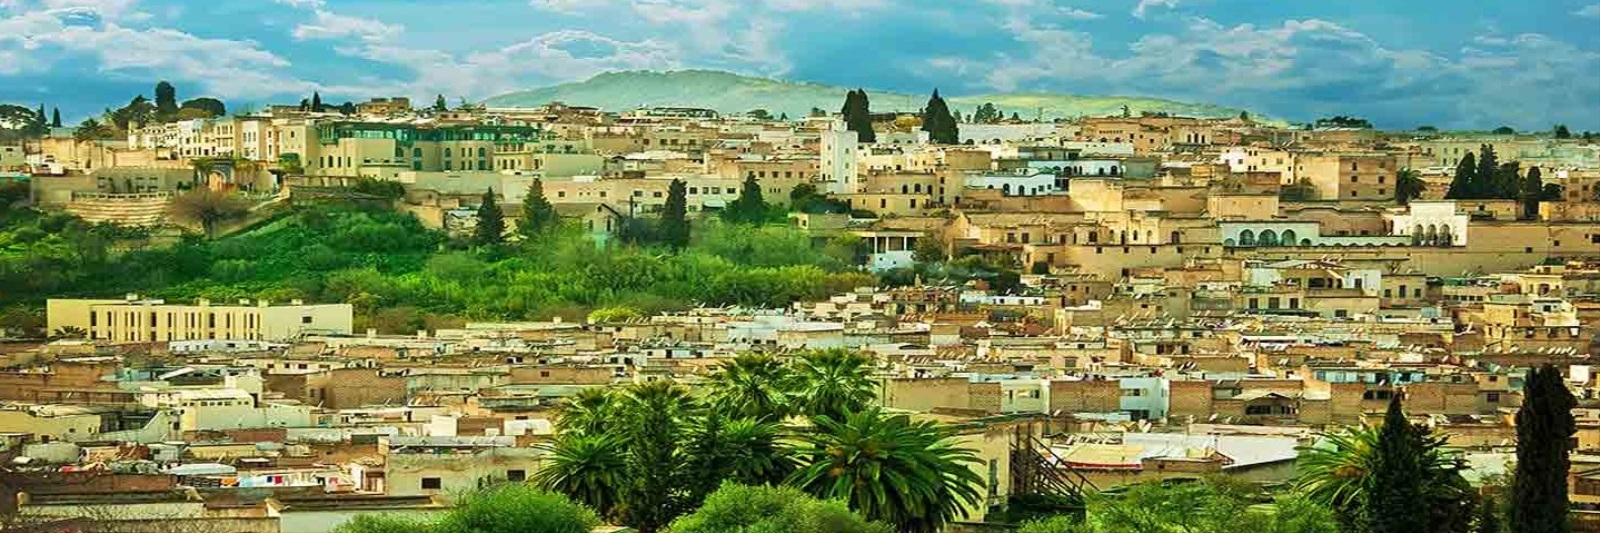  معلومات عن مدينة فاس المغربية